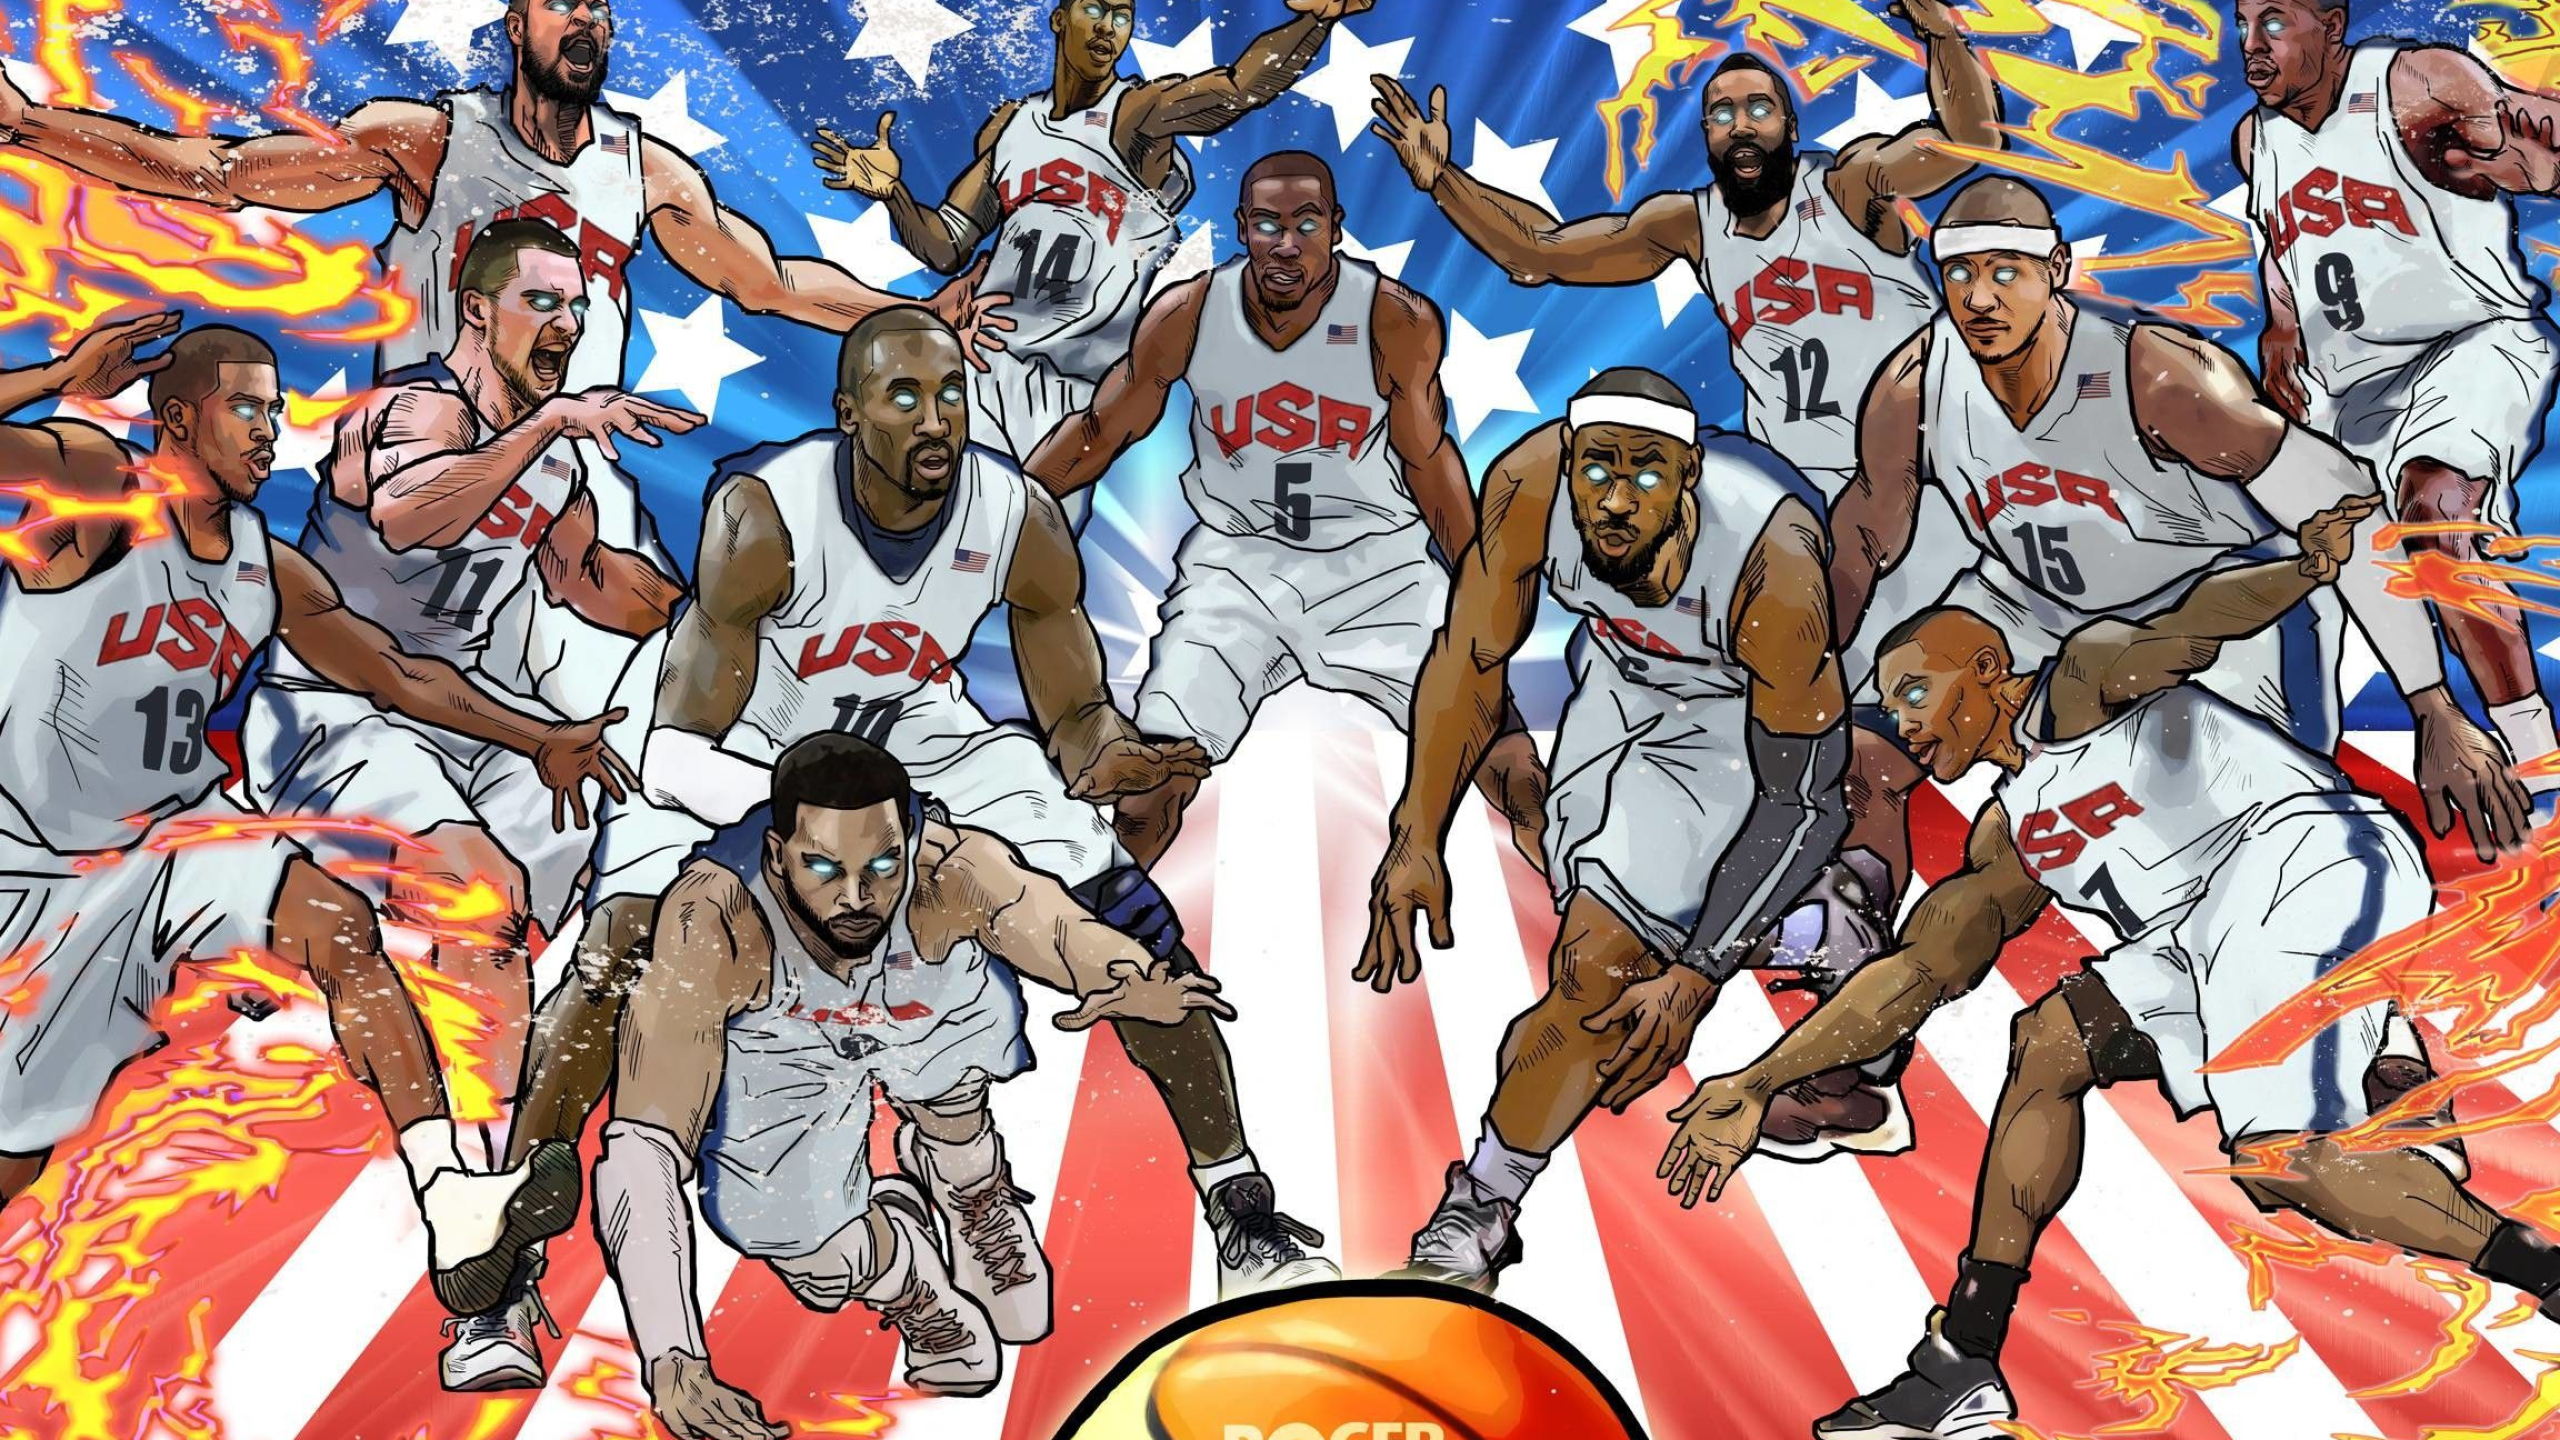 2560x1440 NBA Cartoon Wallpapers Top Free NBA Cartoon Backgrounds